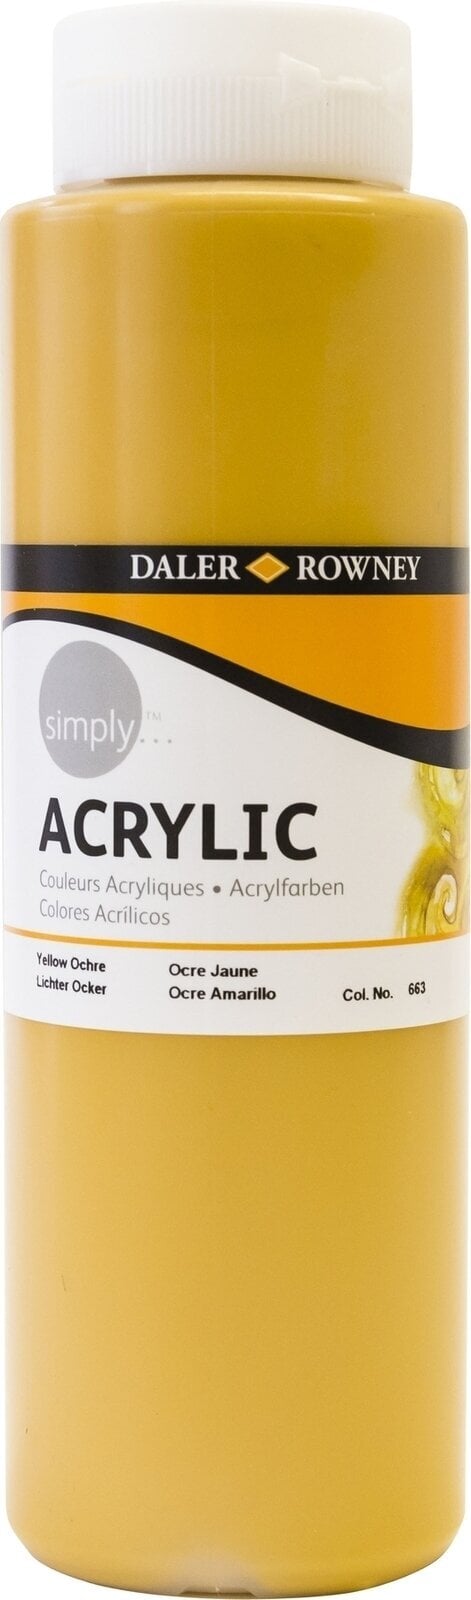 Acrylfarbe Daler Rowney Simply Acrylfarbe Yellow Ochre 750 ml 1 Stck